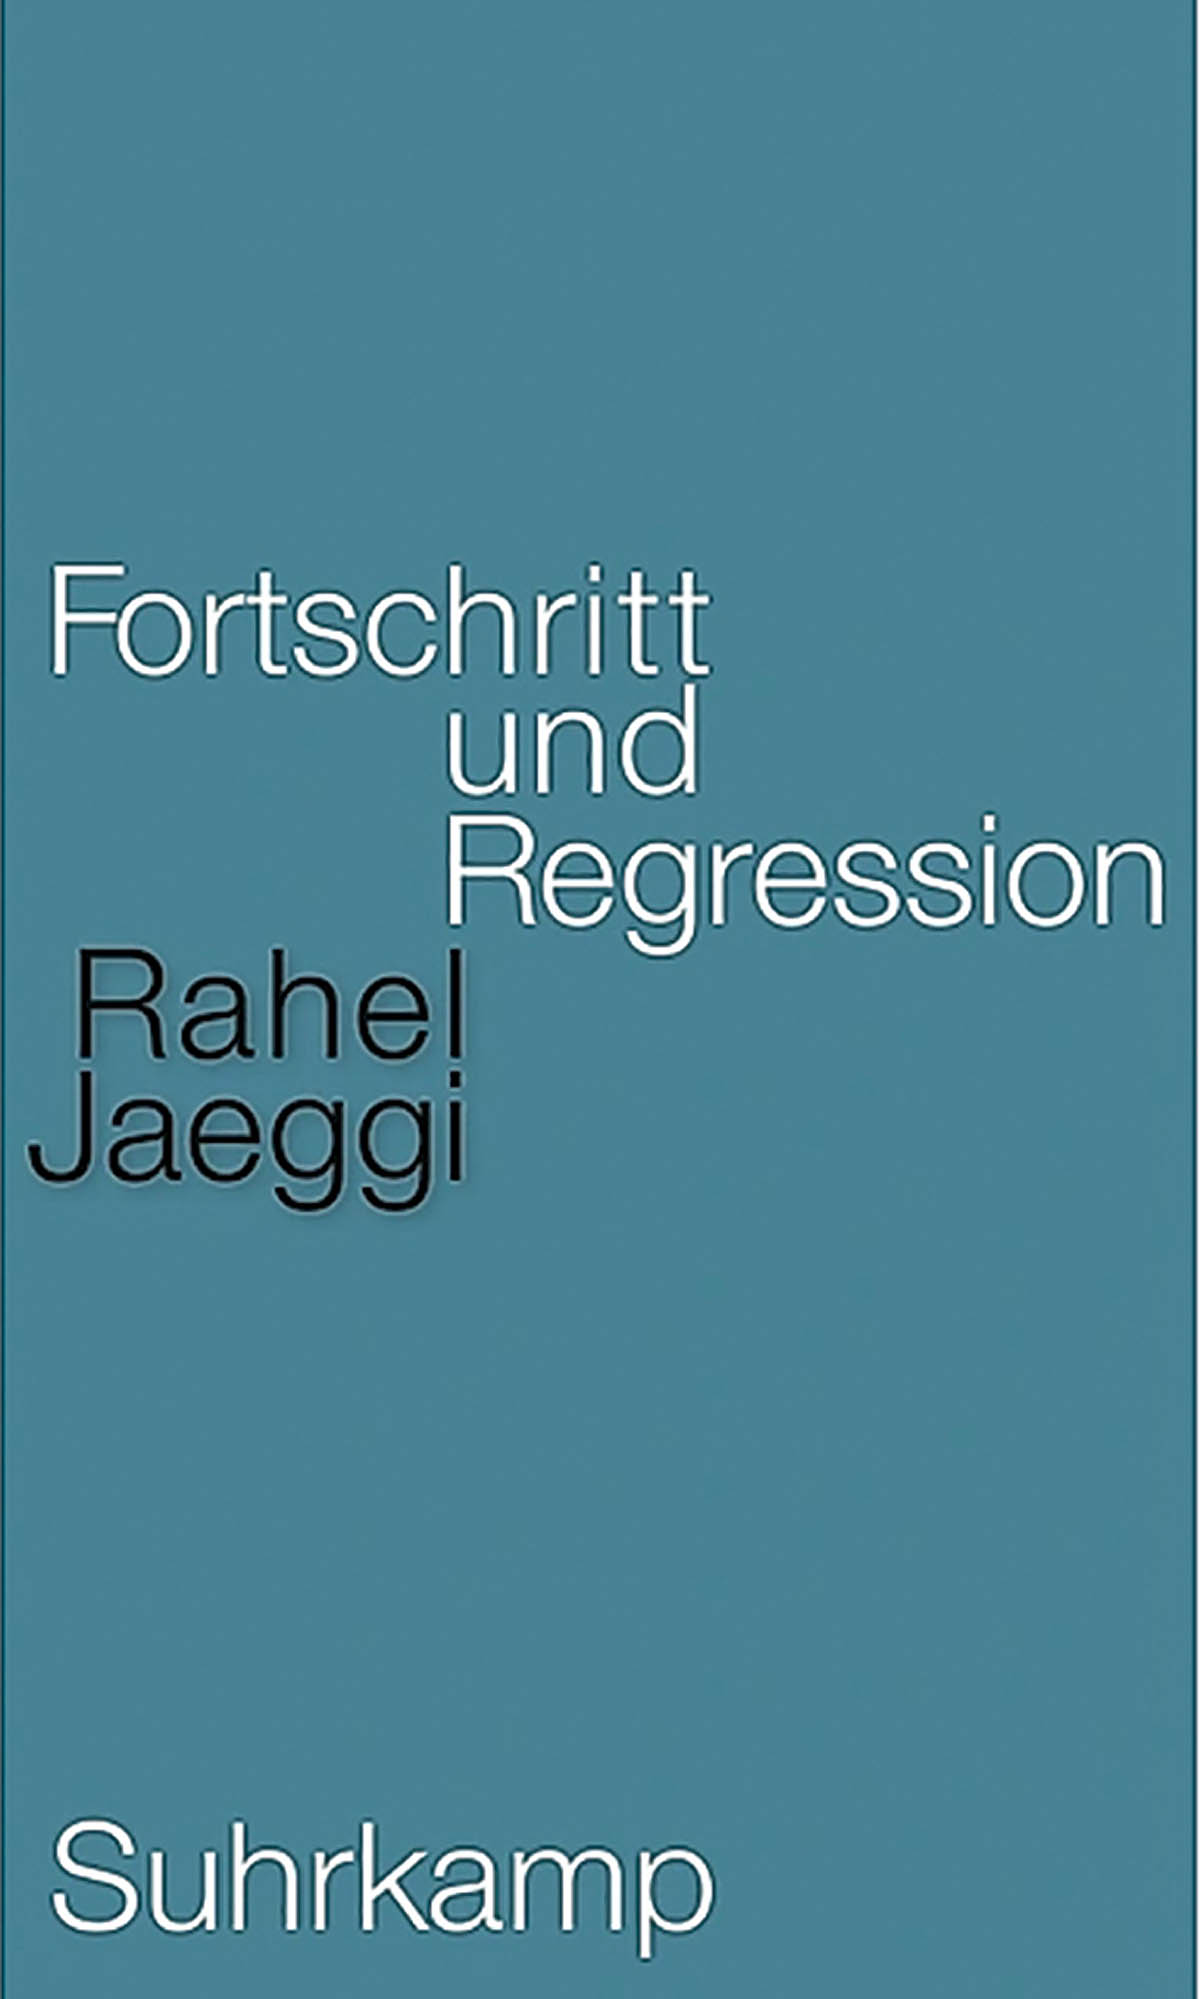 fortschritt-und-regression-371095173 copy